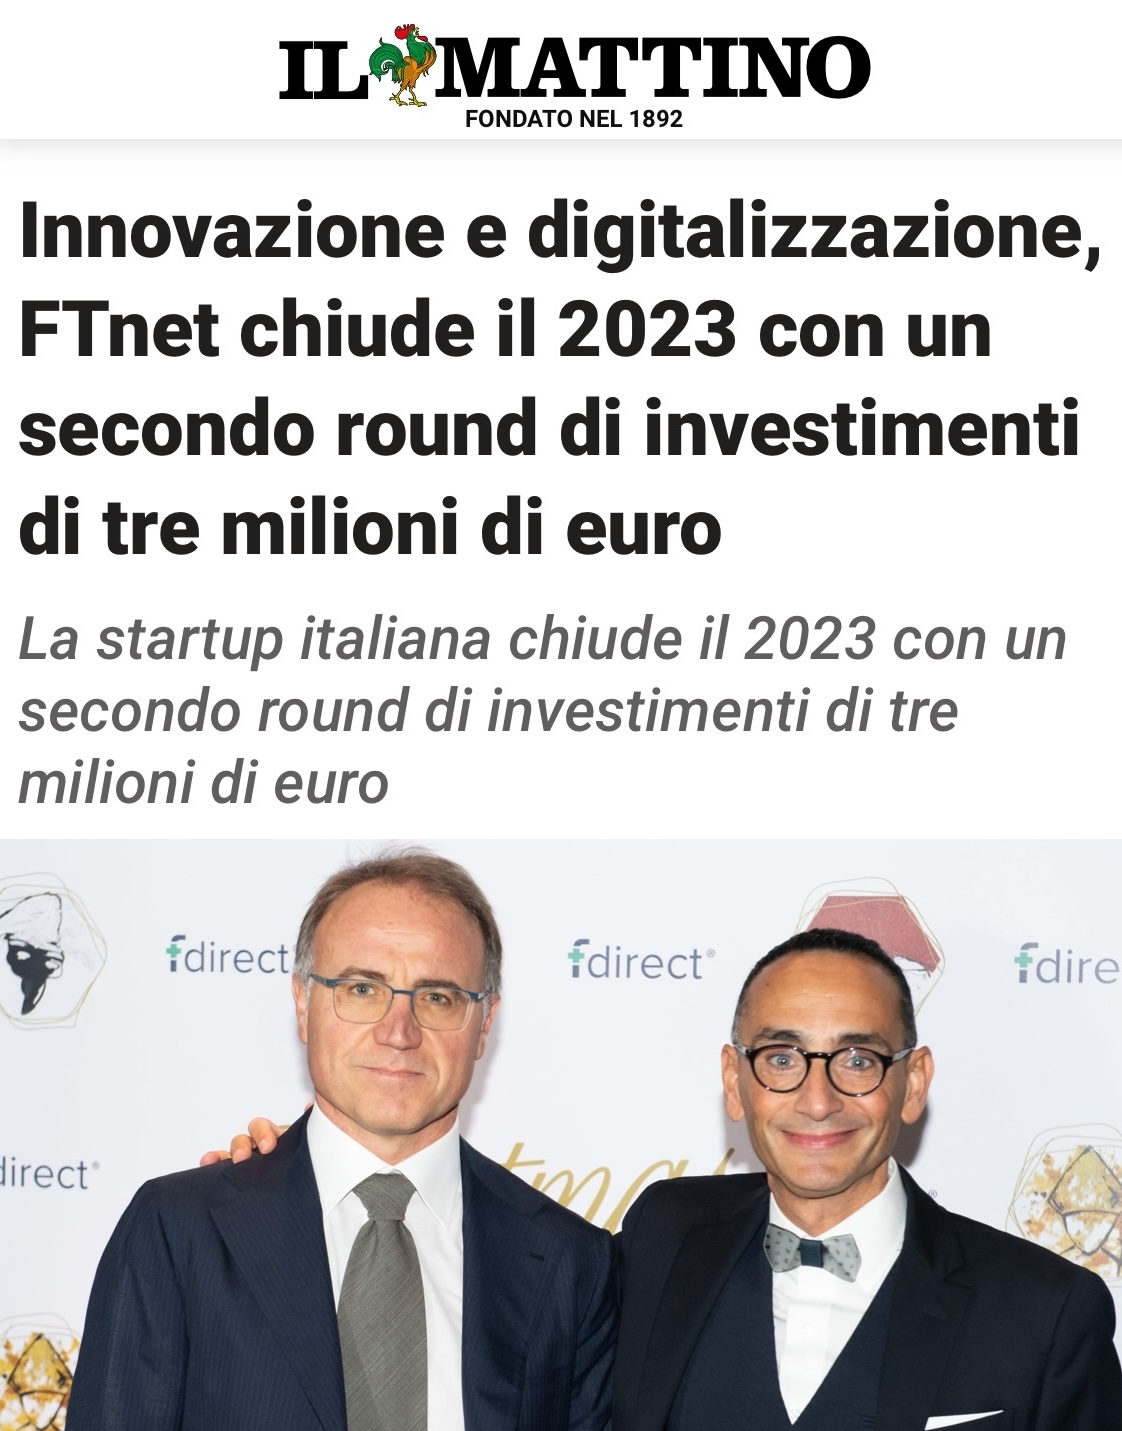 Innovazione e digitalizzazione, FTNet chiude il 2023 con un secondo round di tre milioni di euro